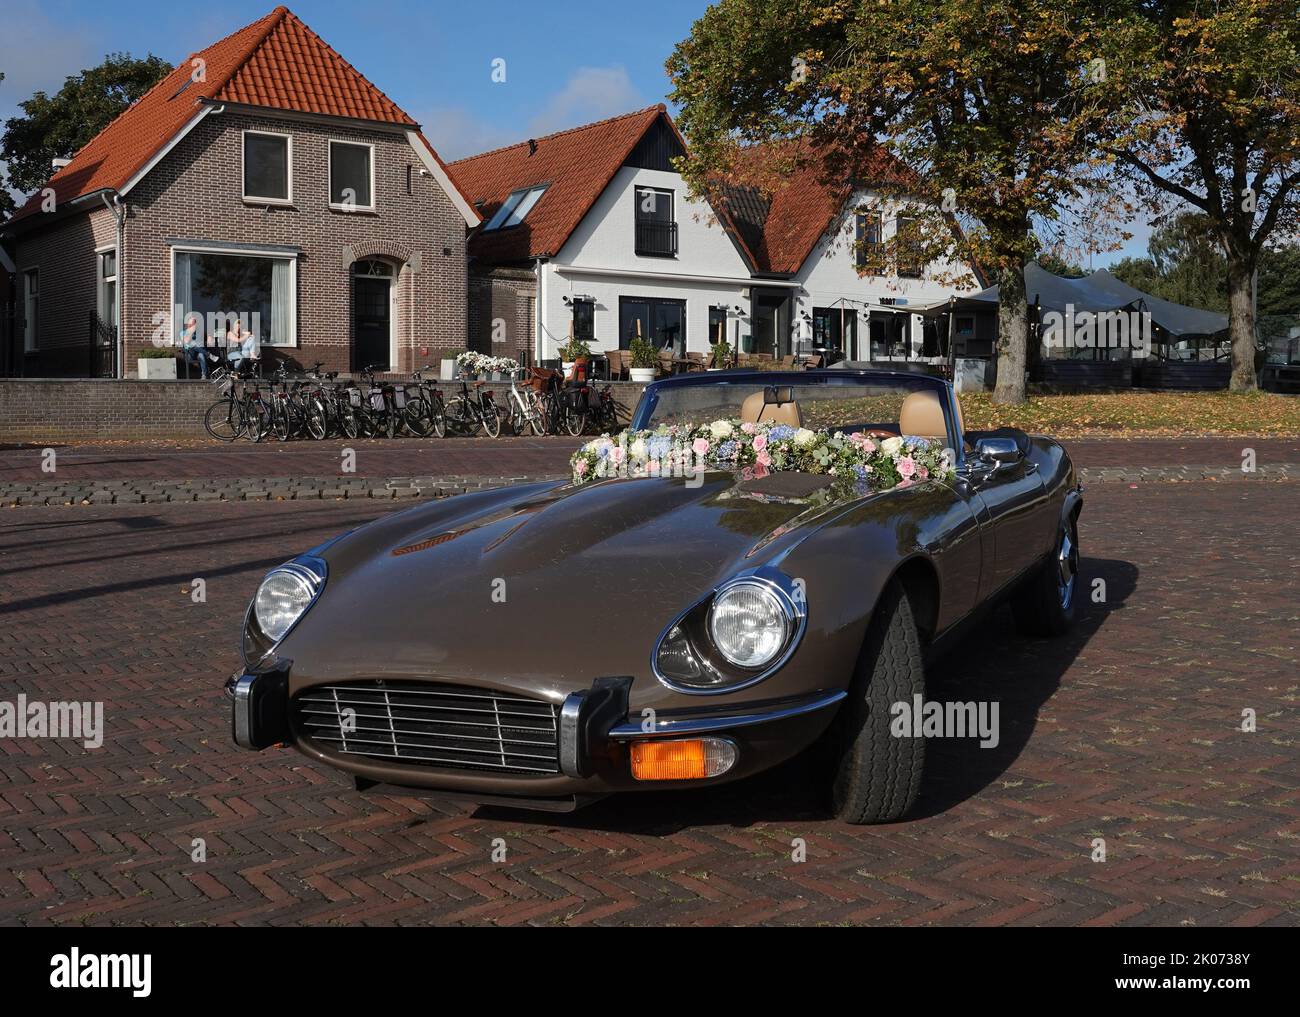 Elburg, pays-Bas - sept 9 2022 Une voiture de location très spéciale pour les mariages : une Jaguar e-type cabriolet. Quelques vieilles maisons hollandaises en arrière-plan Banque D'Images